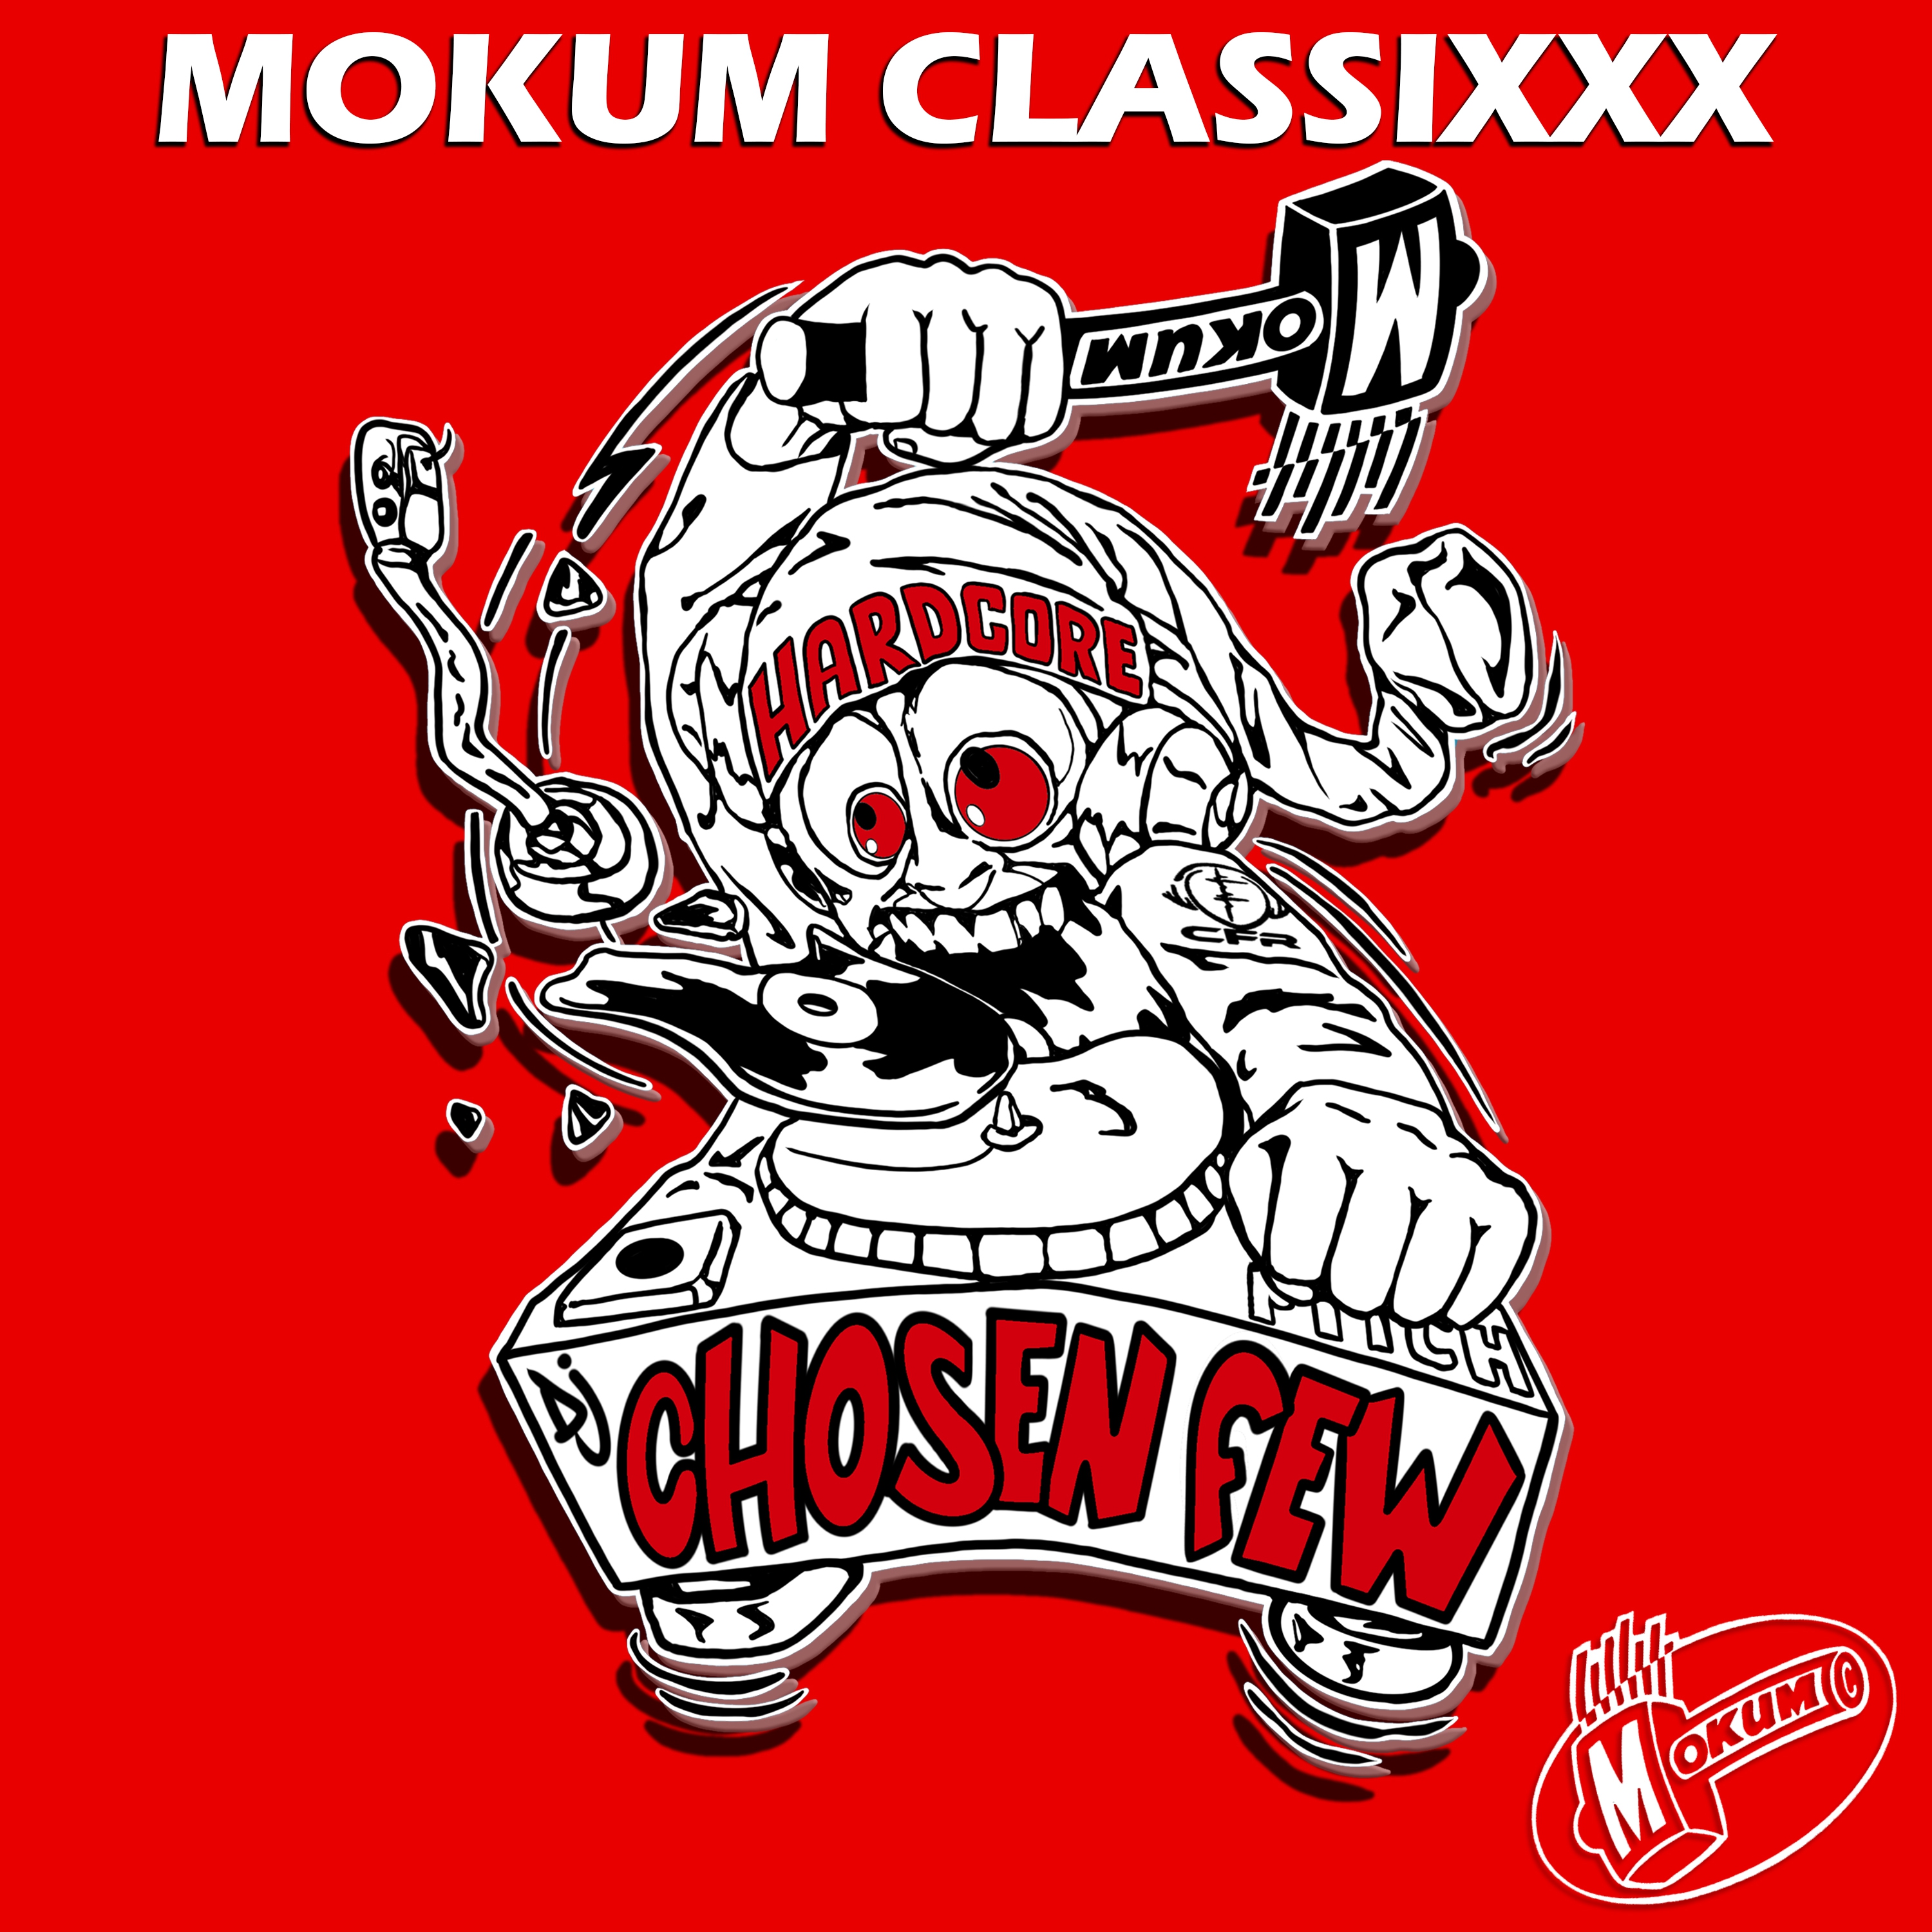 DJ Chosen Few vs DJ Pila - The Break (Wicked XXX Remixxx) - MP3 and WAV  downloads at Hardtunes